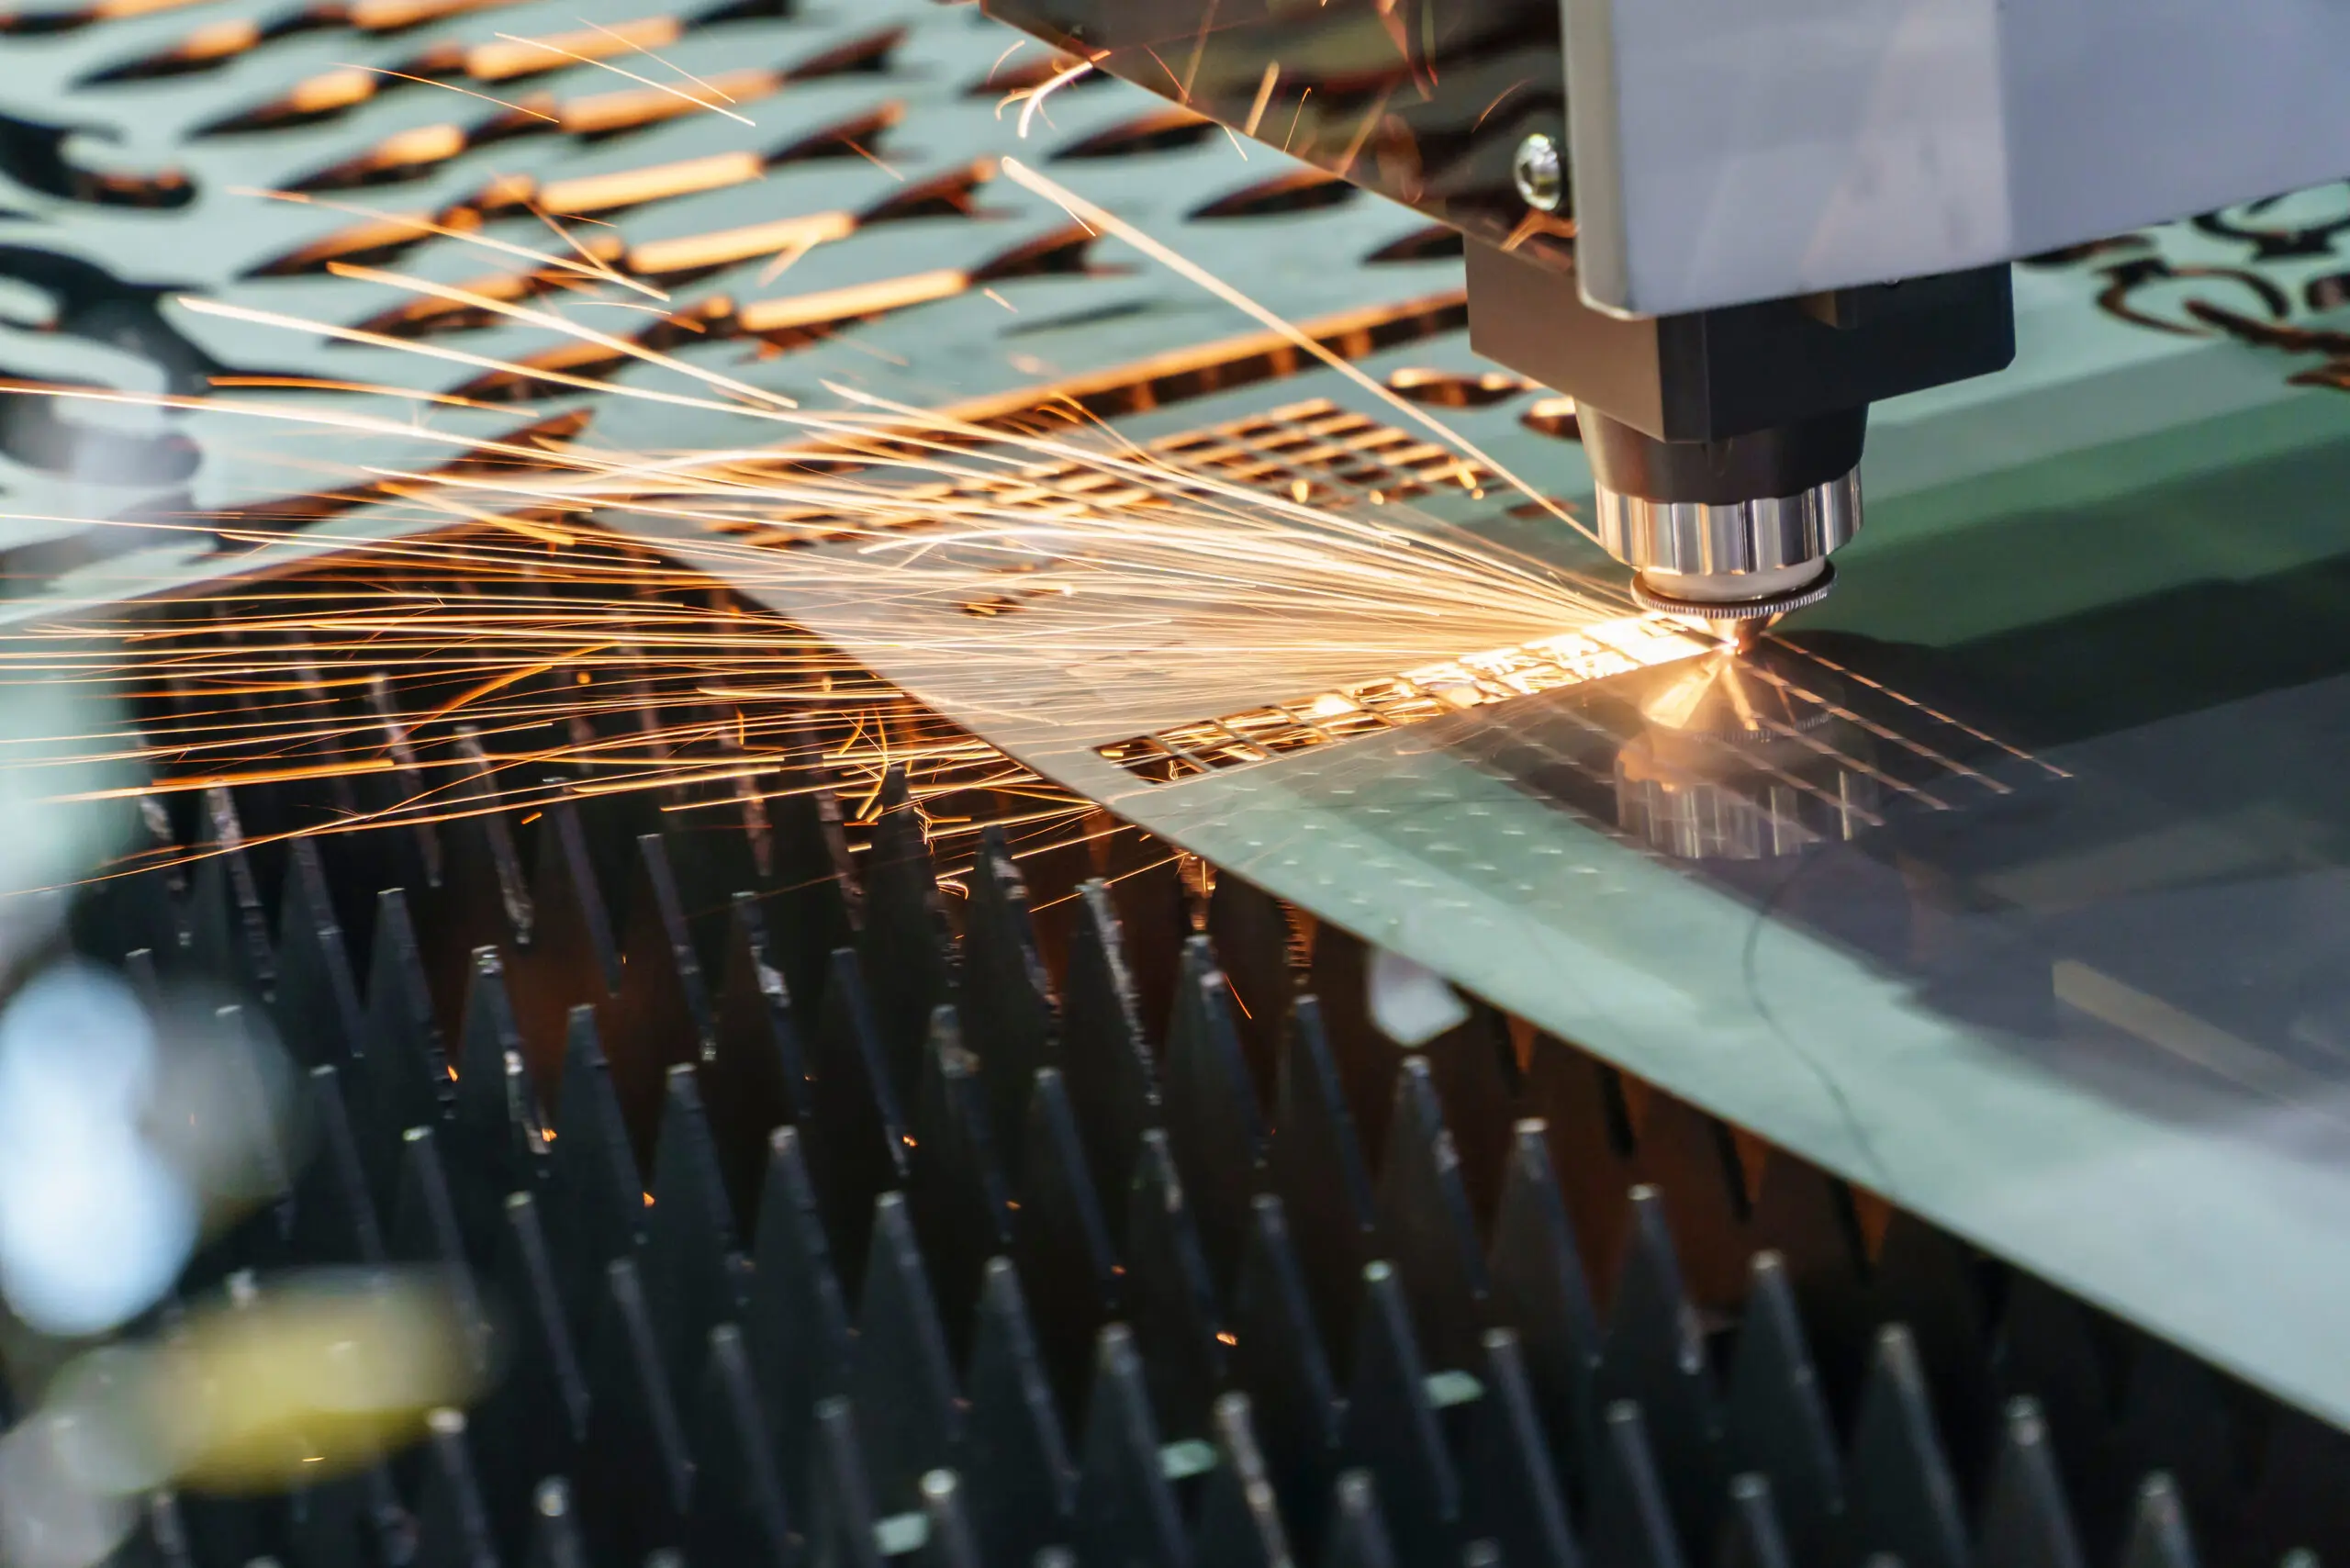 Manufacture ensuring laser safety